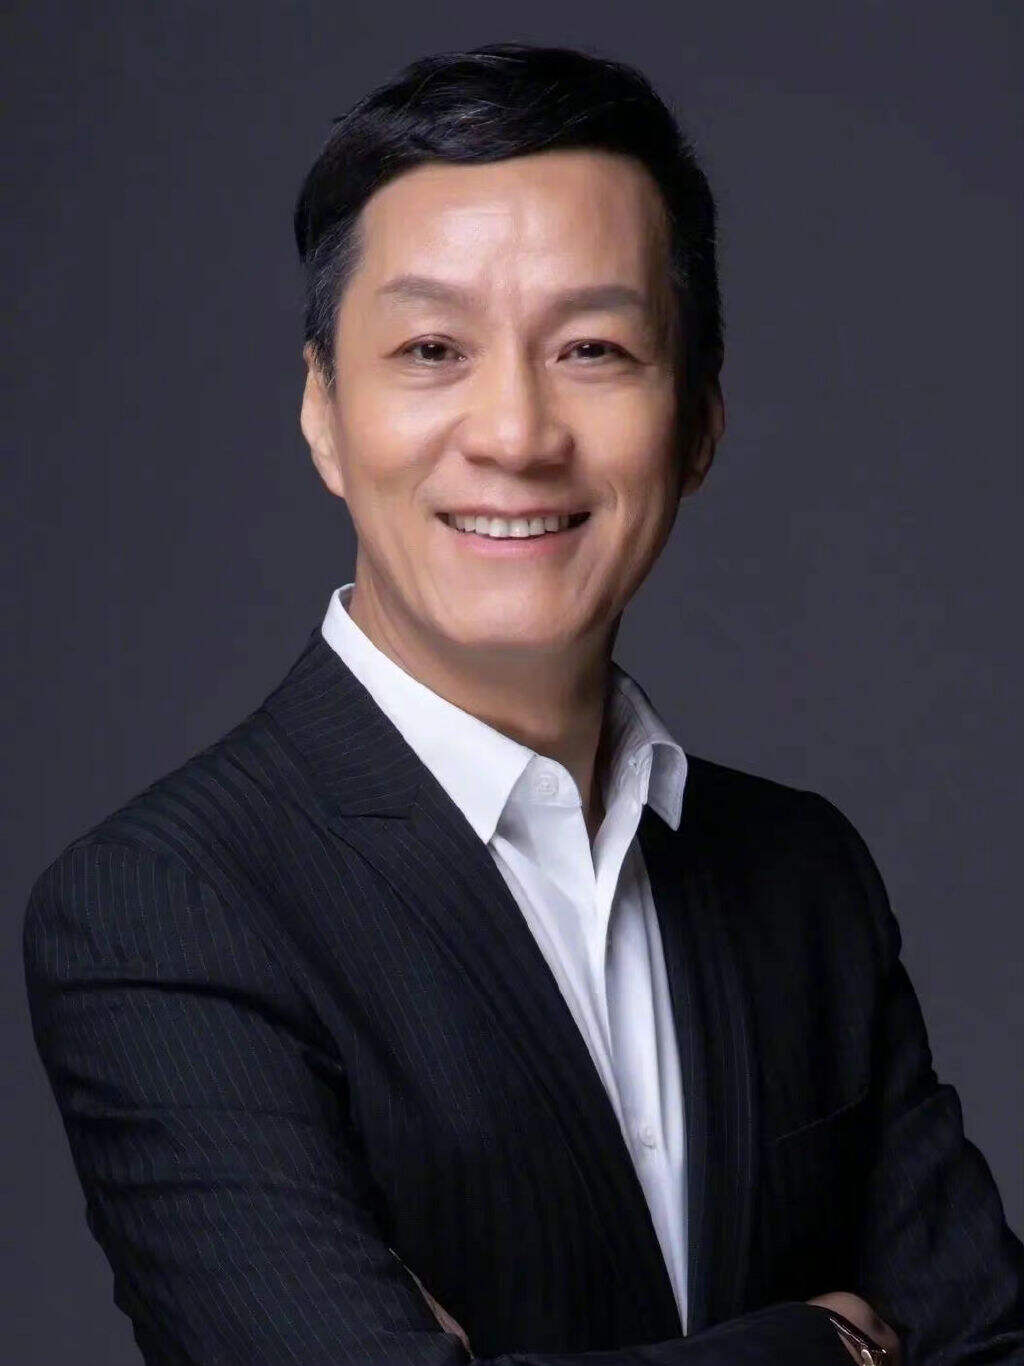 冯远征担任北京人艺新任院长 第一位演员出身的院长